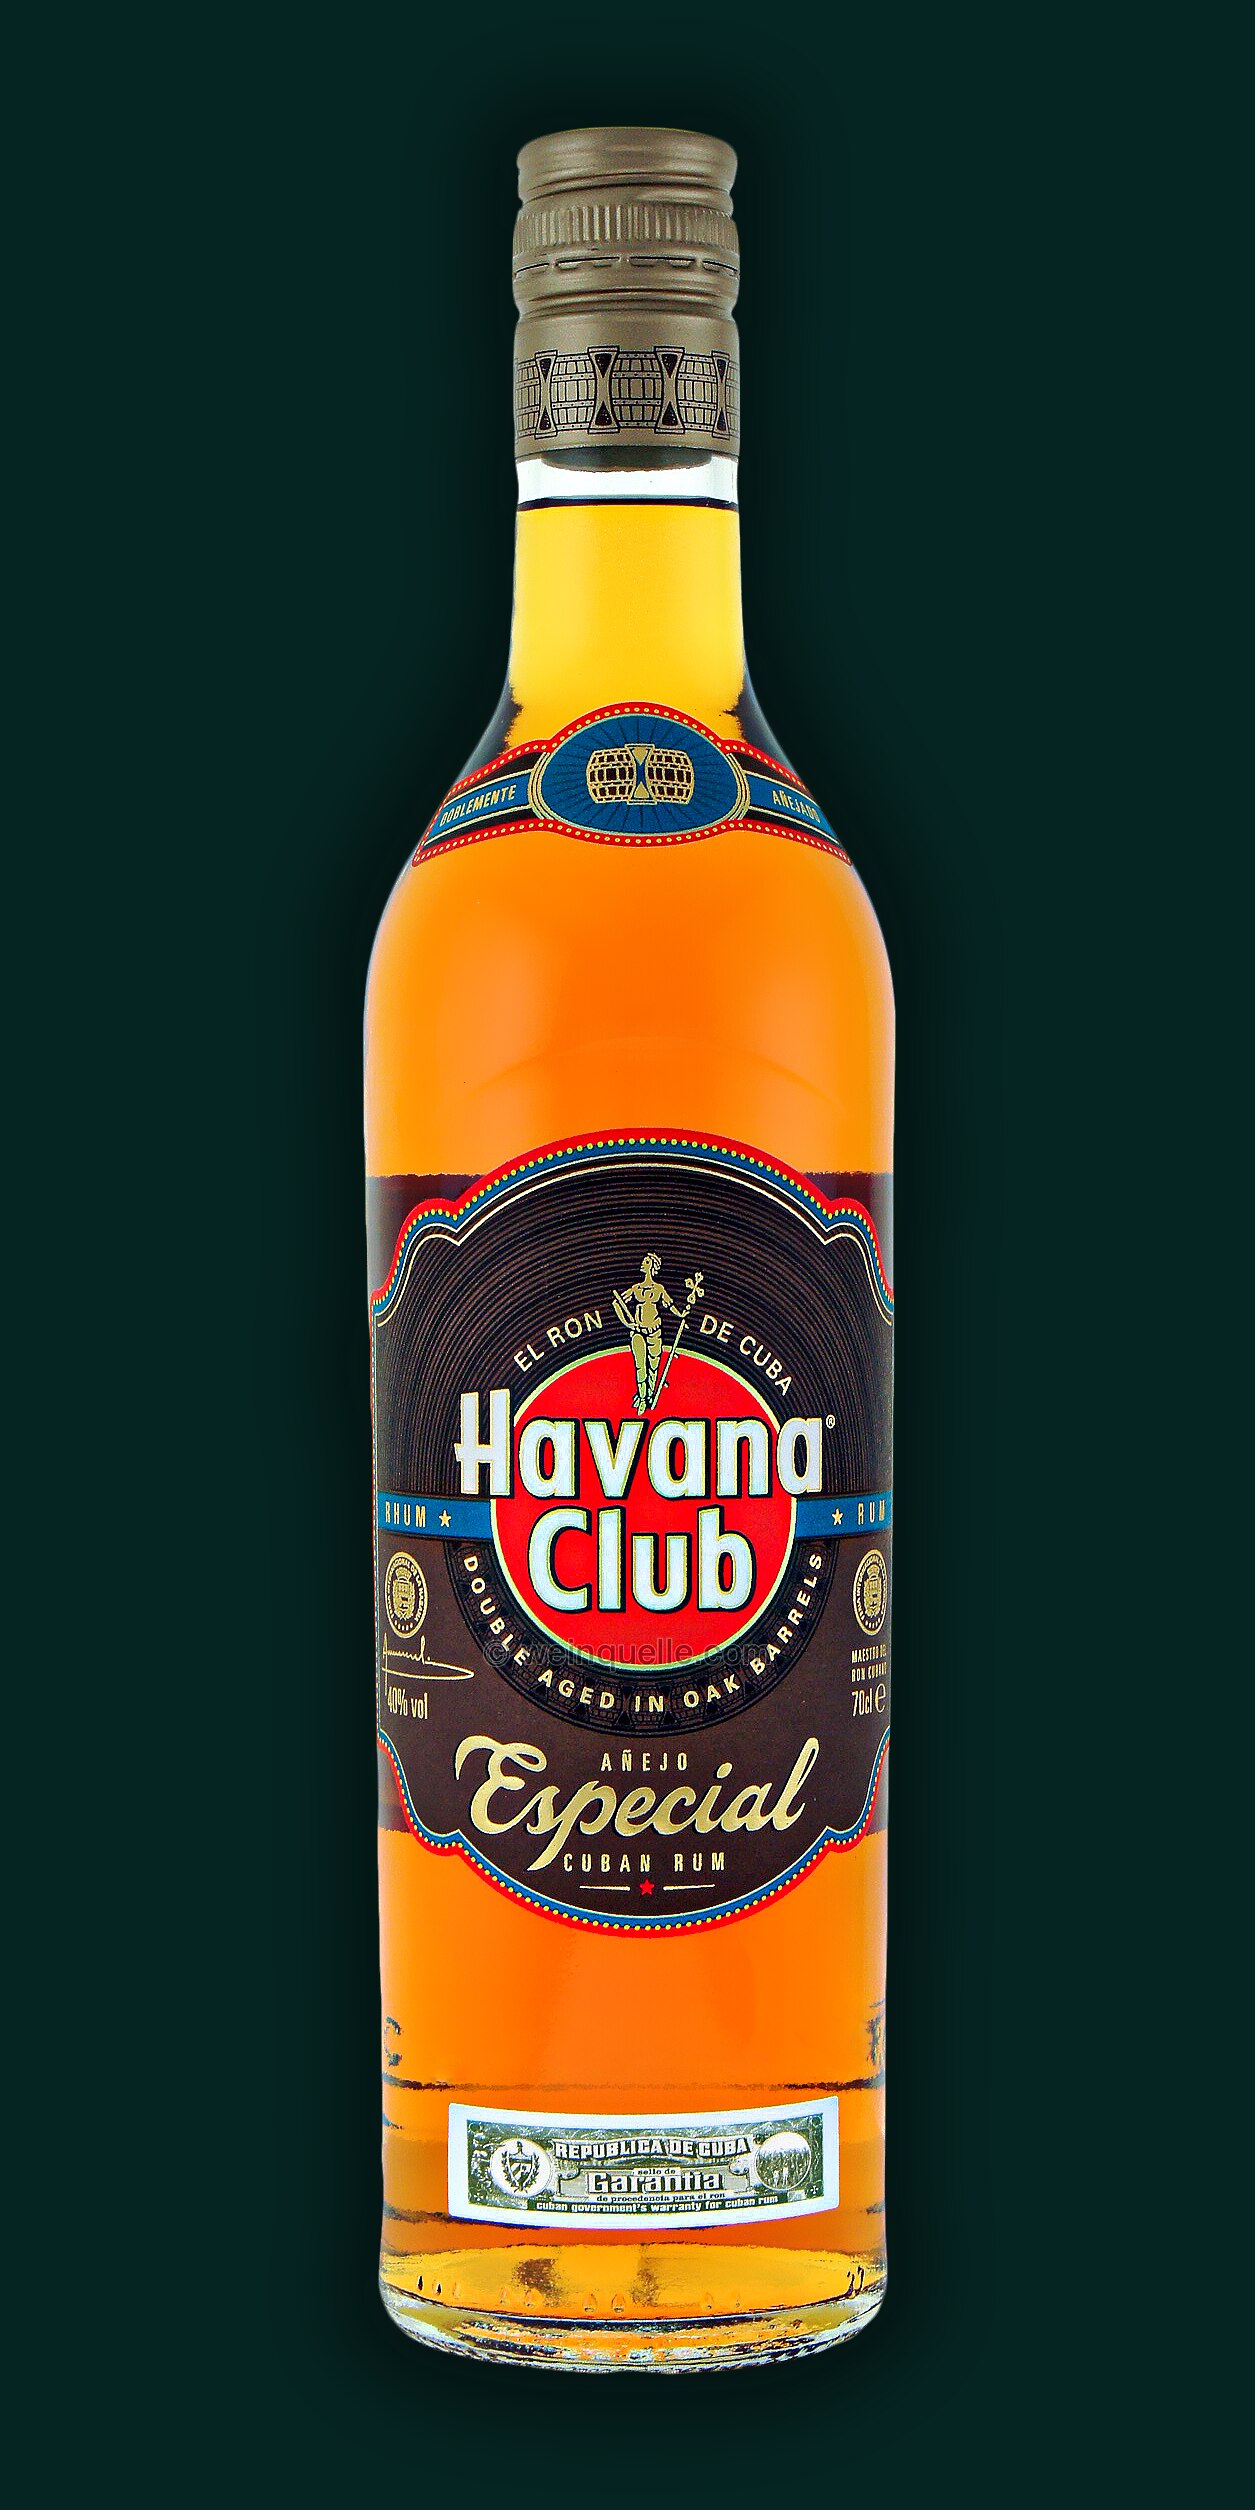 Weinquelle - Anejo Lühmann Especial, 17,25 Club € Havana